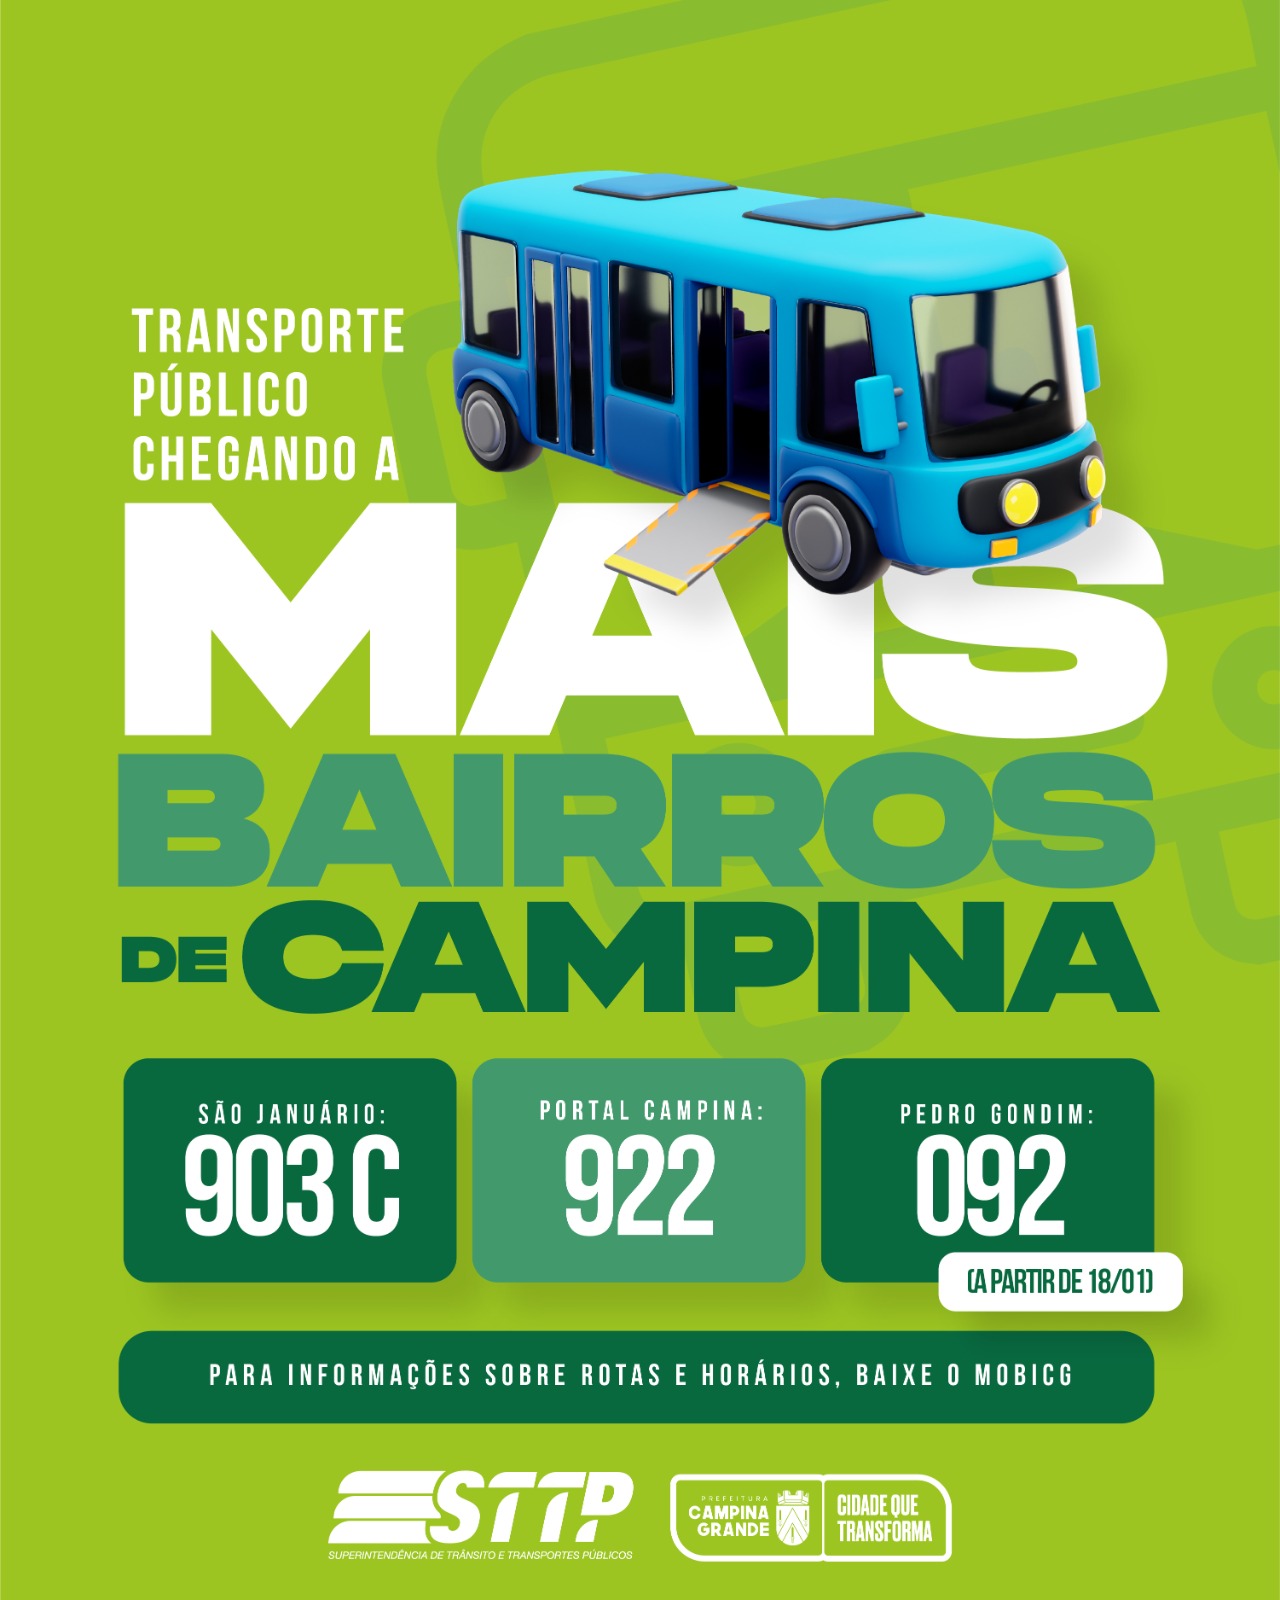 Expansão: Mais três bairros de Campina Grande passam a receber transporte público esta semana